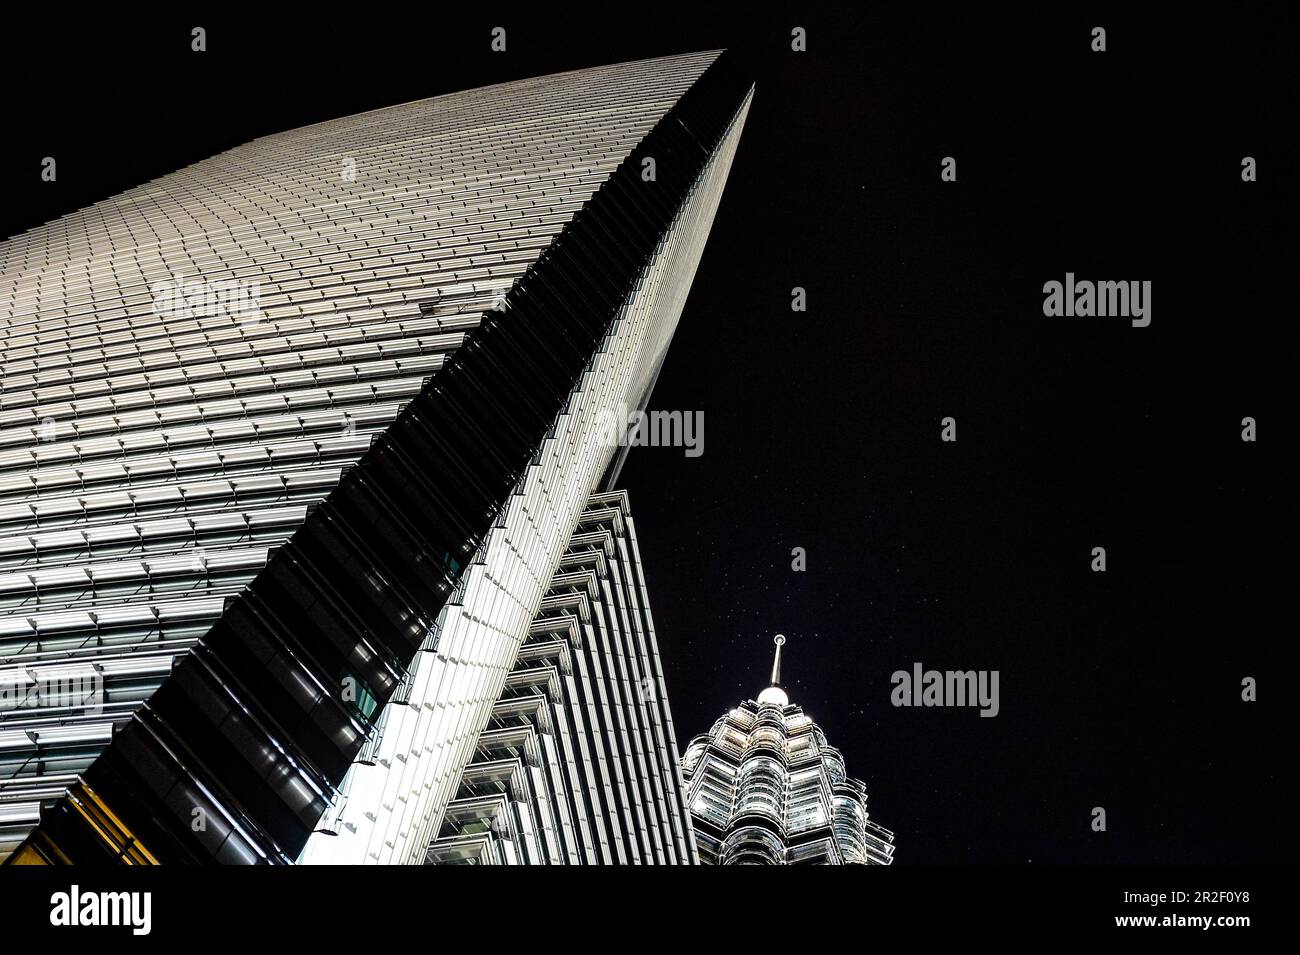 Vista nocturna de un rascacielos iluminado y la Torre Petronas desde una perspectiva inusual, Kuala Lumpur, Malasia Foto de stock